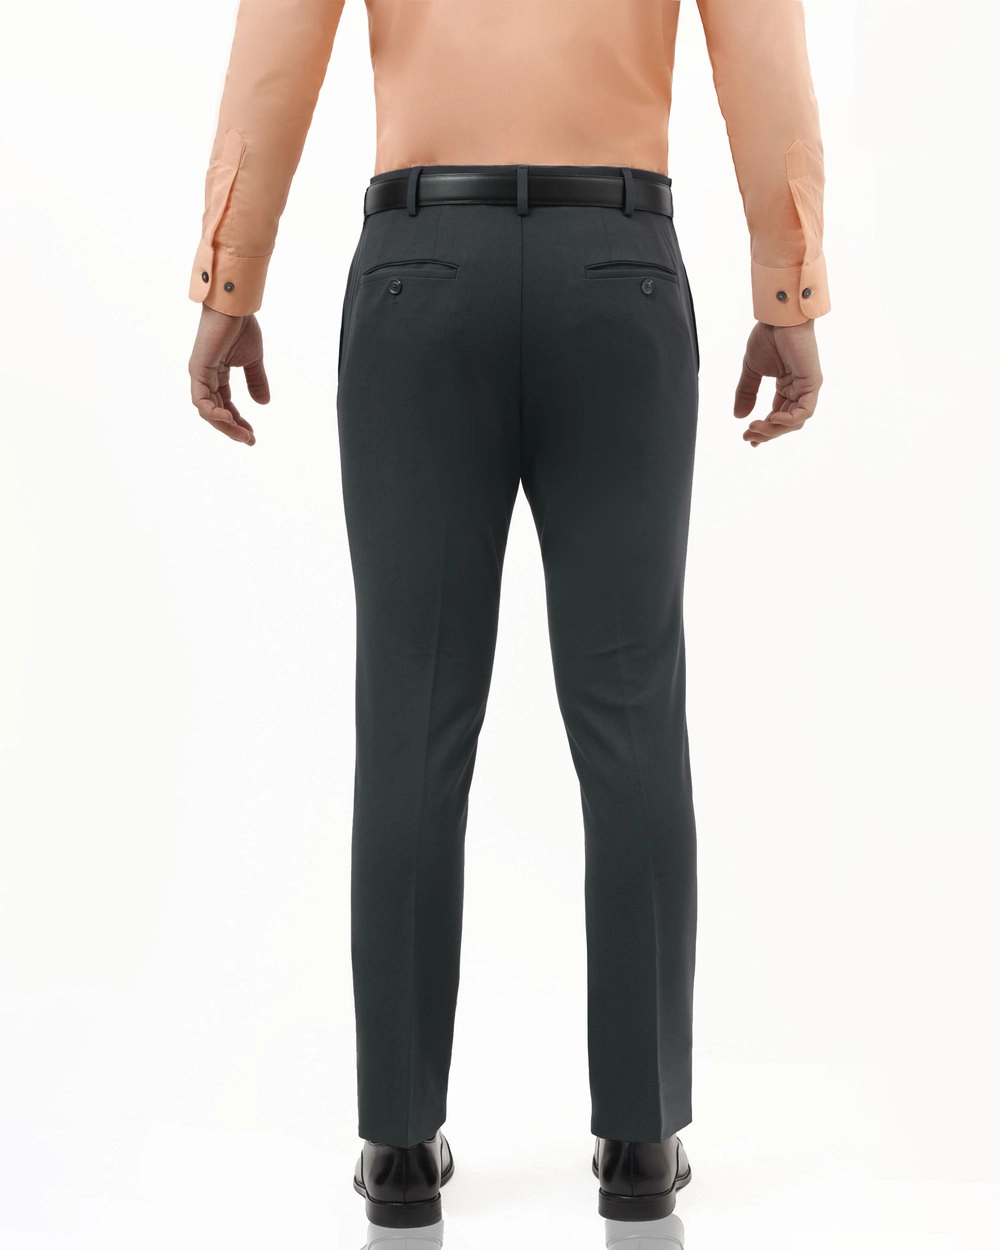 Pantalón de vestir slim fit active flex gris